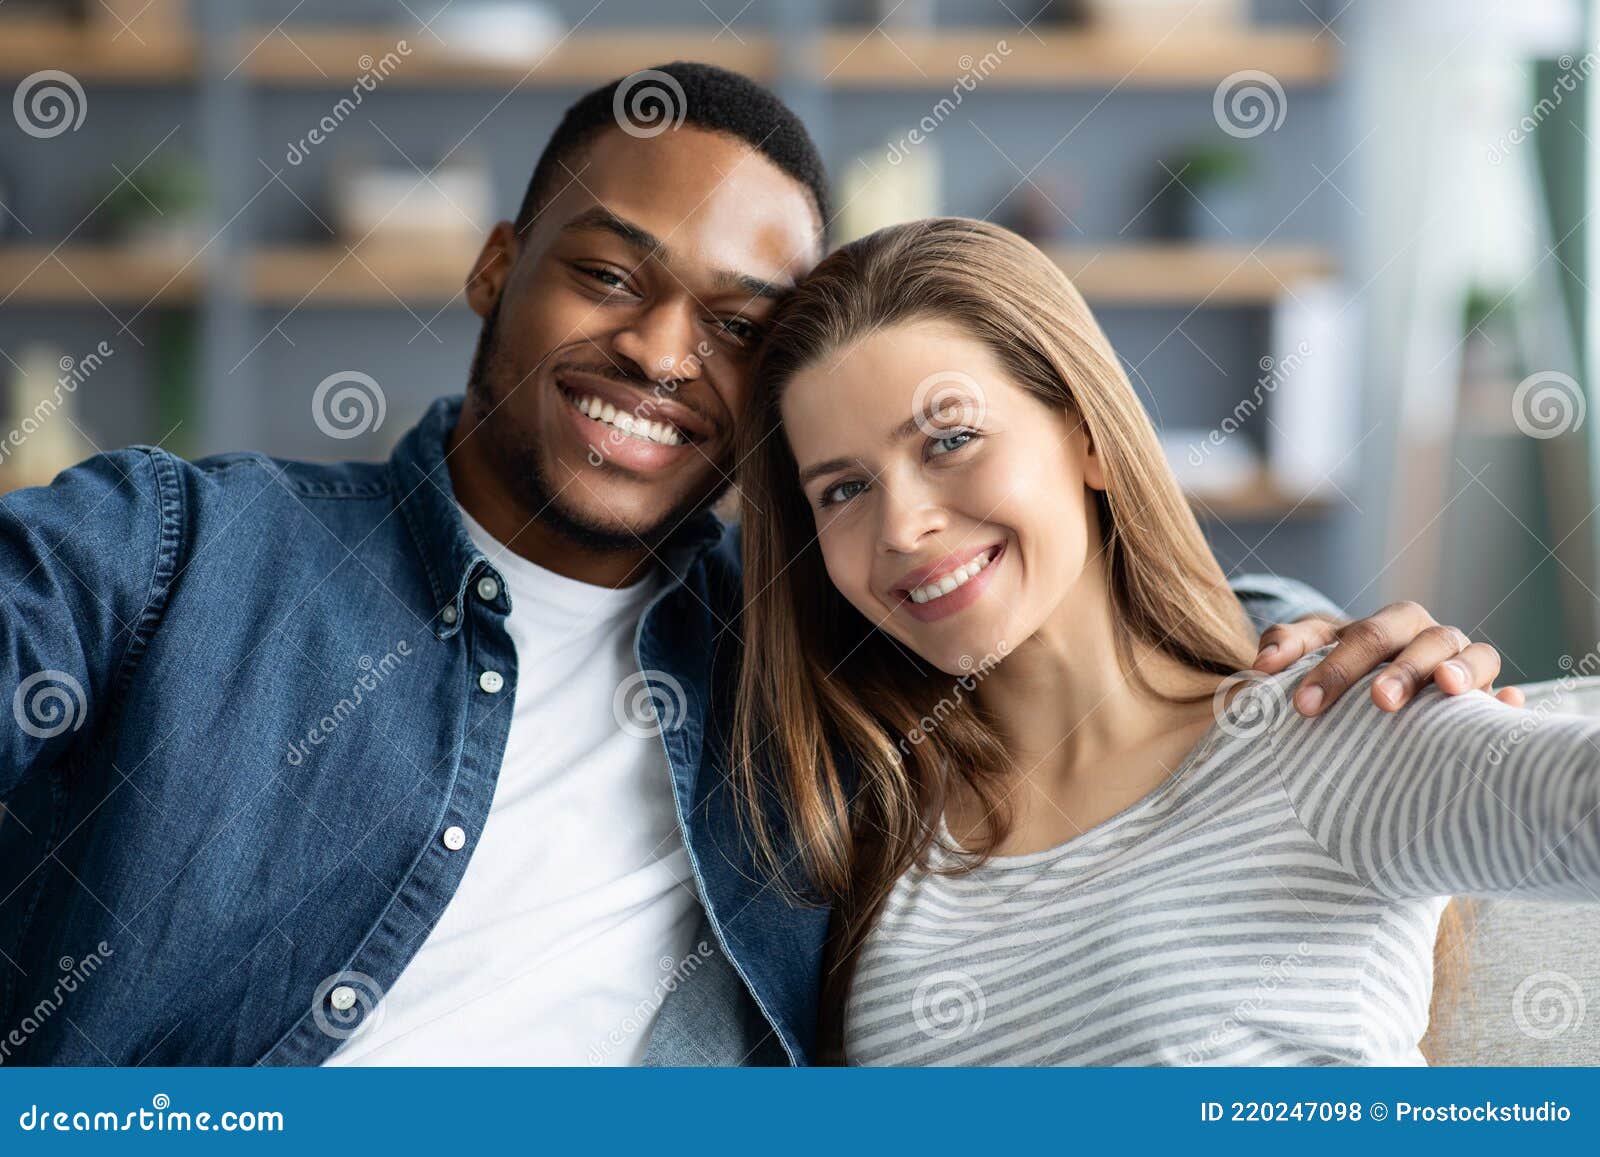 self shot interracial couple